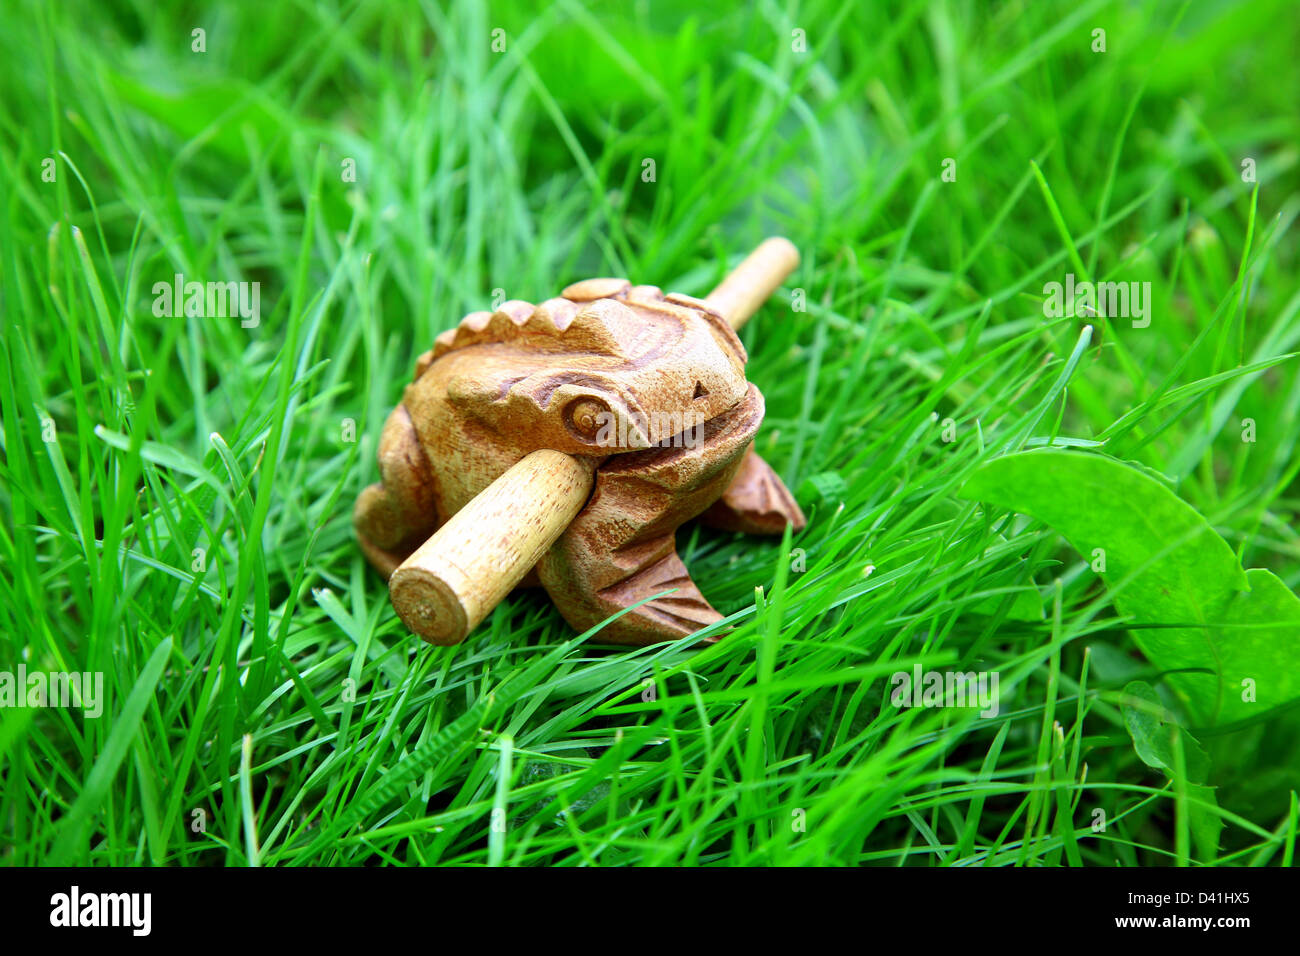 Asiatischen handgemachten wohlhabende Frosch auf grünen Rasen Hintergrund Stockfoto